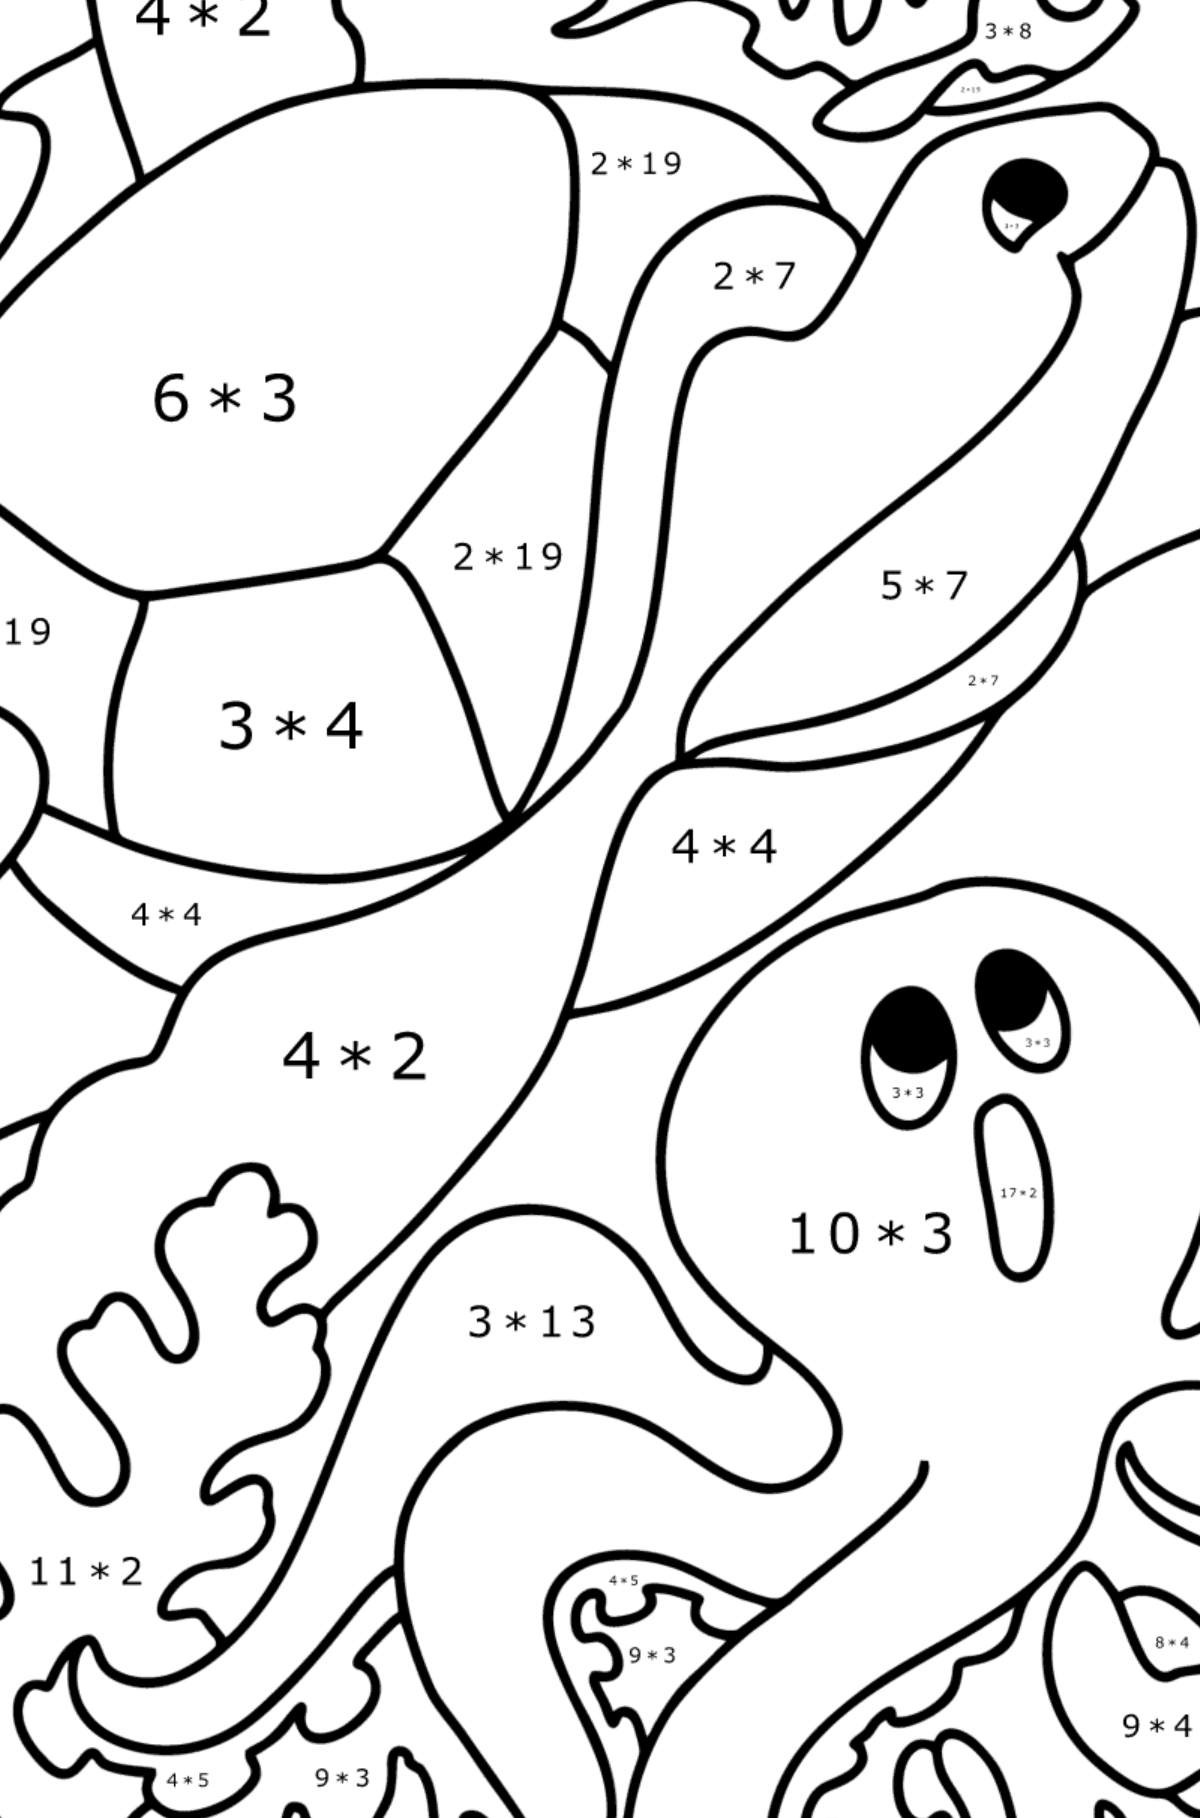 Kolorowanka Ryby, Żółwie, Kraby i Ośmiornice - Kolorowanki matematyczne mnożenie dla dzieci